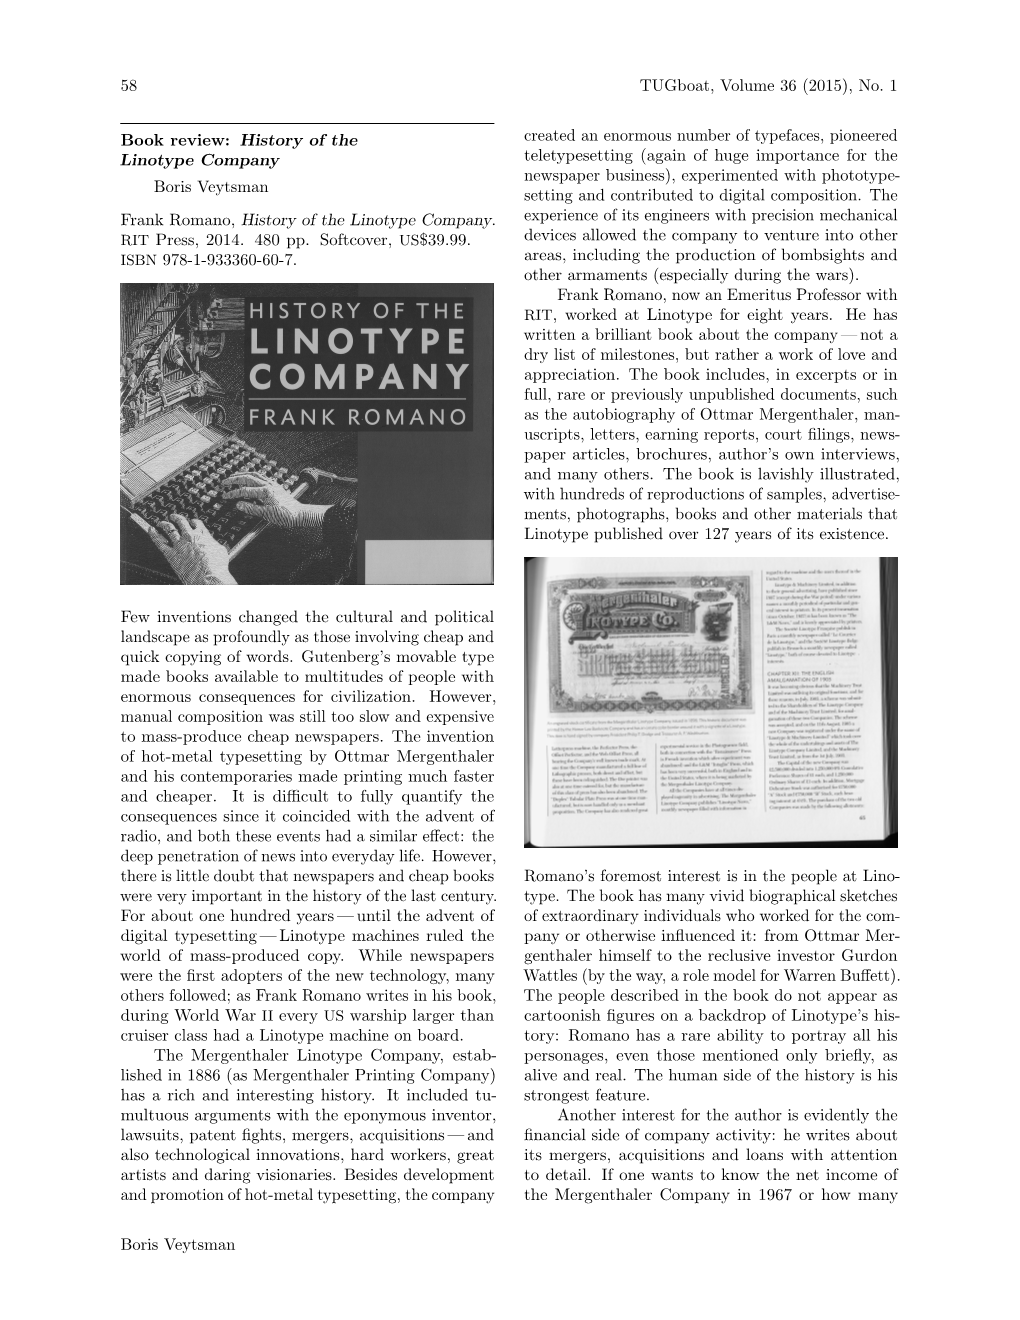 History of the Linotype Company, by Frank Romano